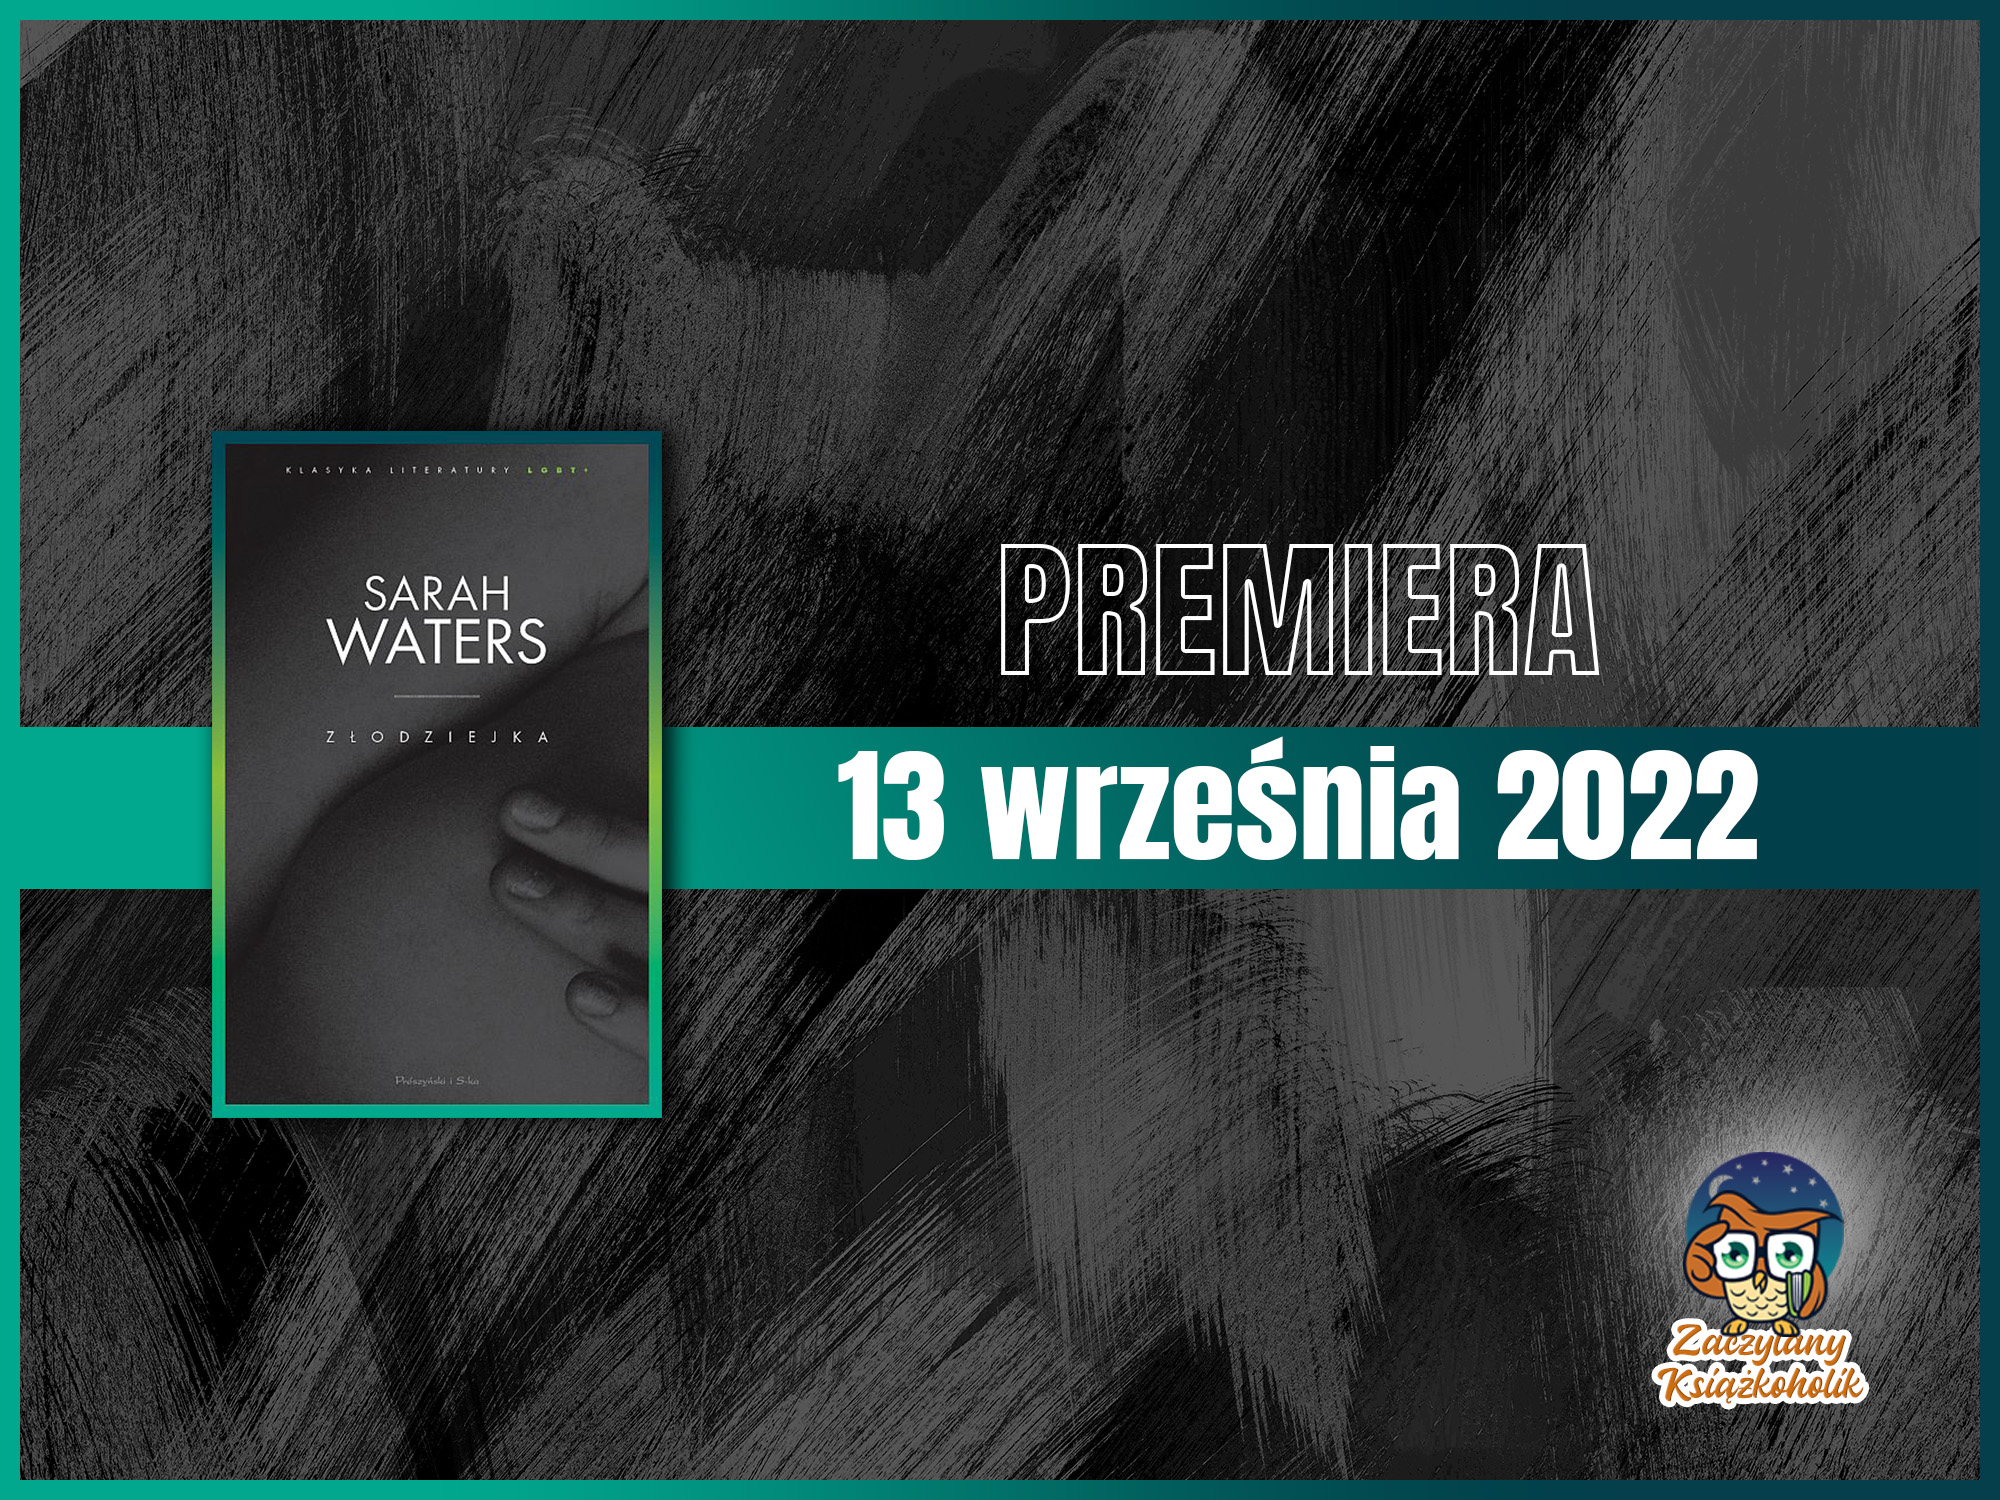 Złodziejka-Sarah Waters-zaczytanyksiazkoholik.pl